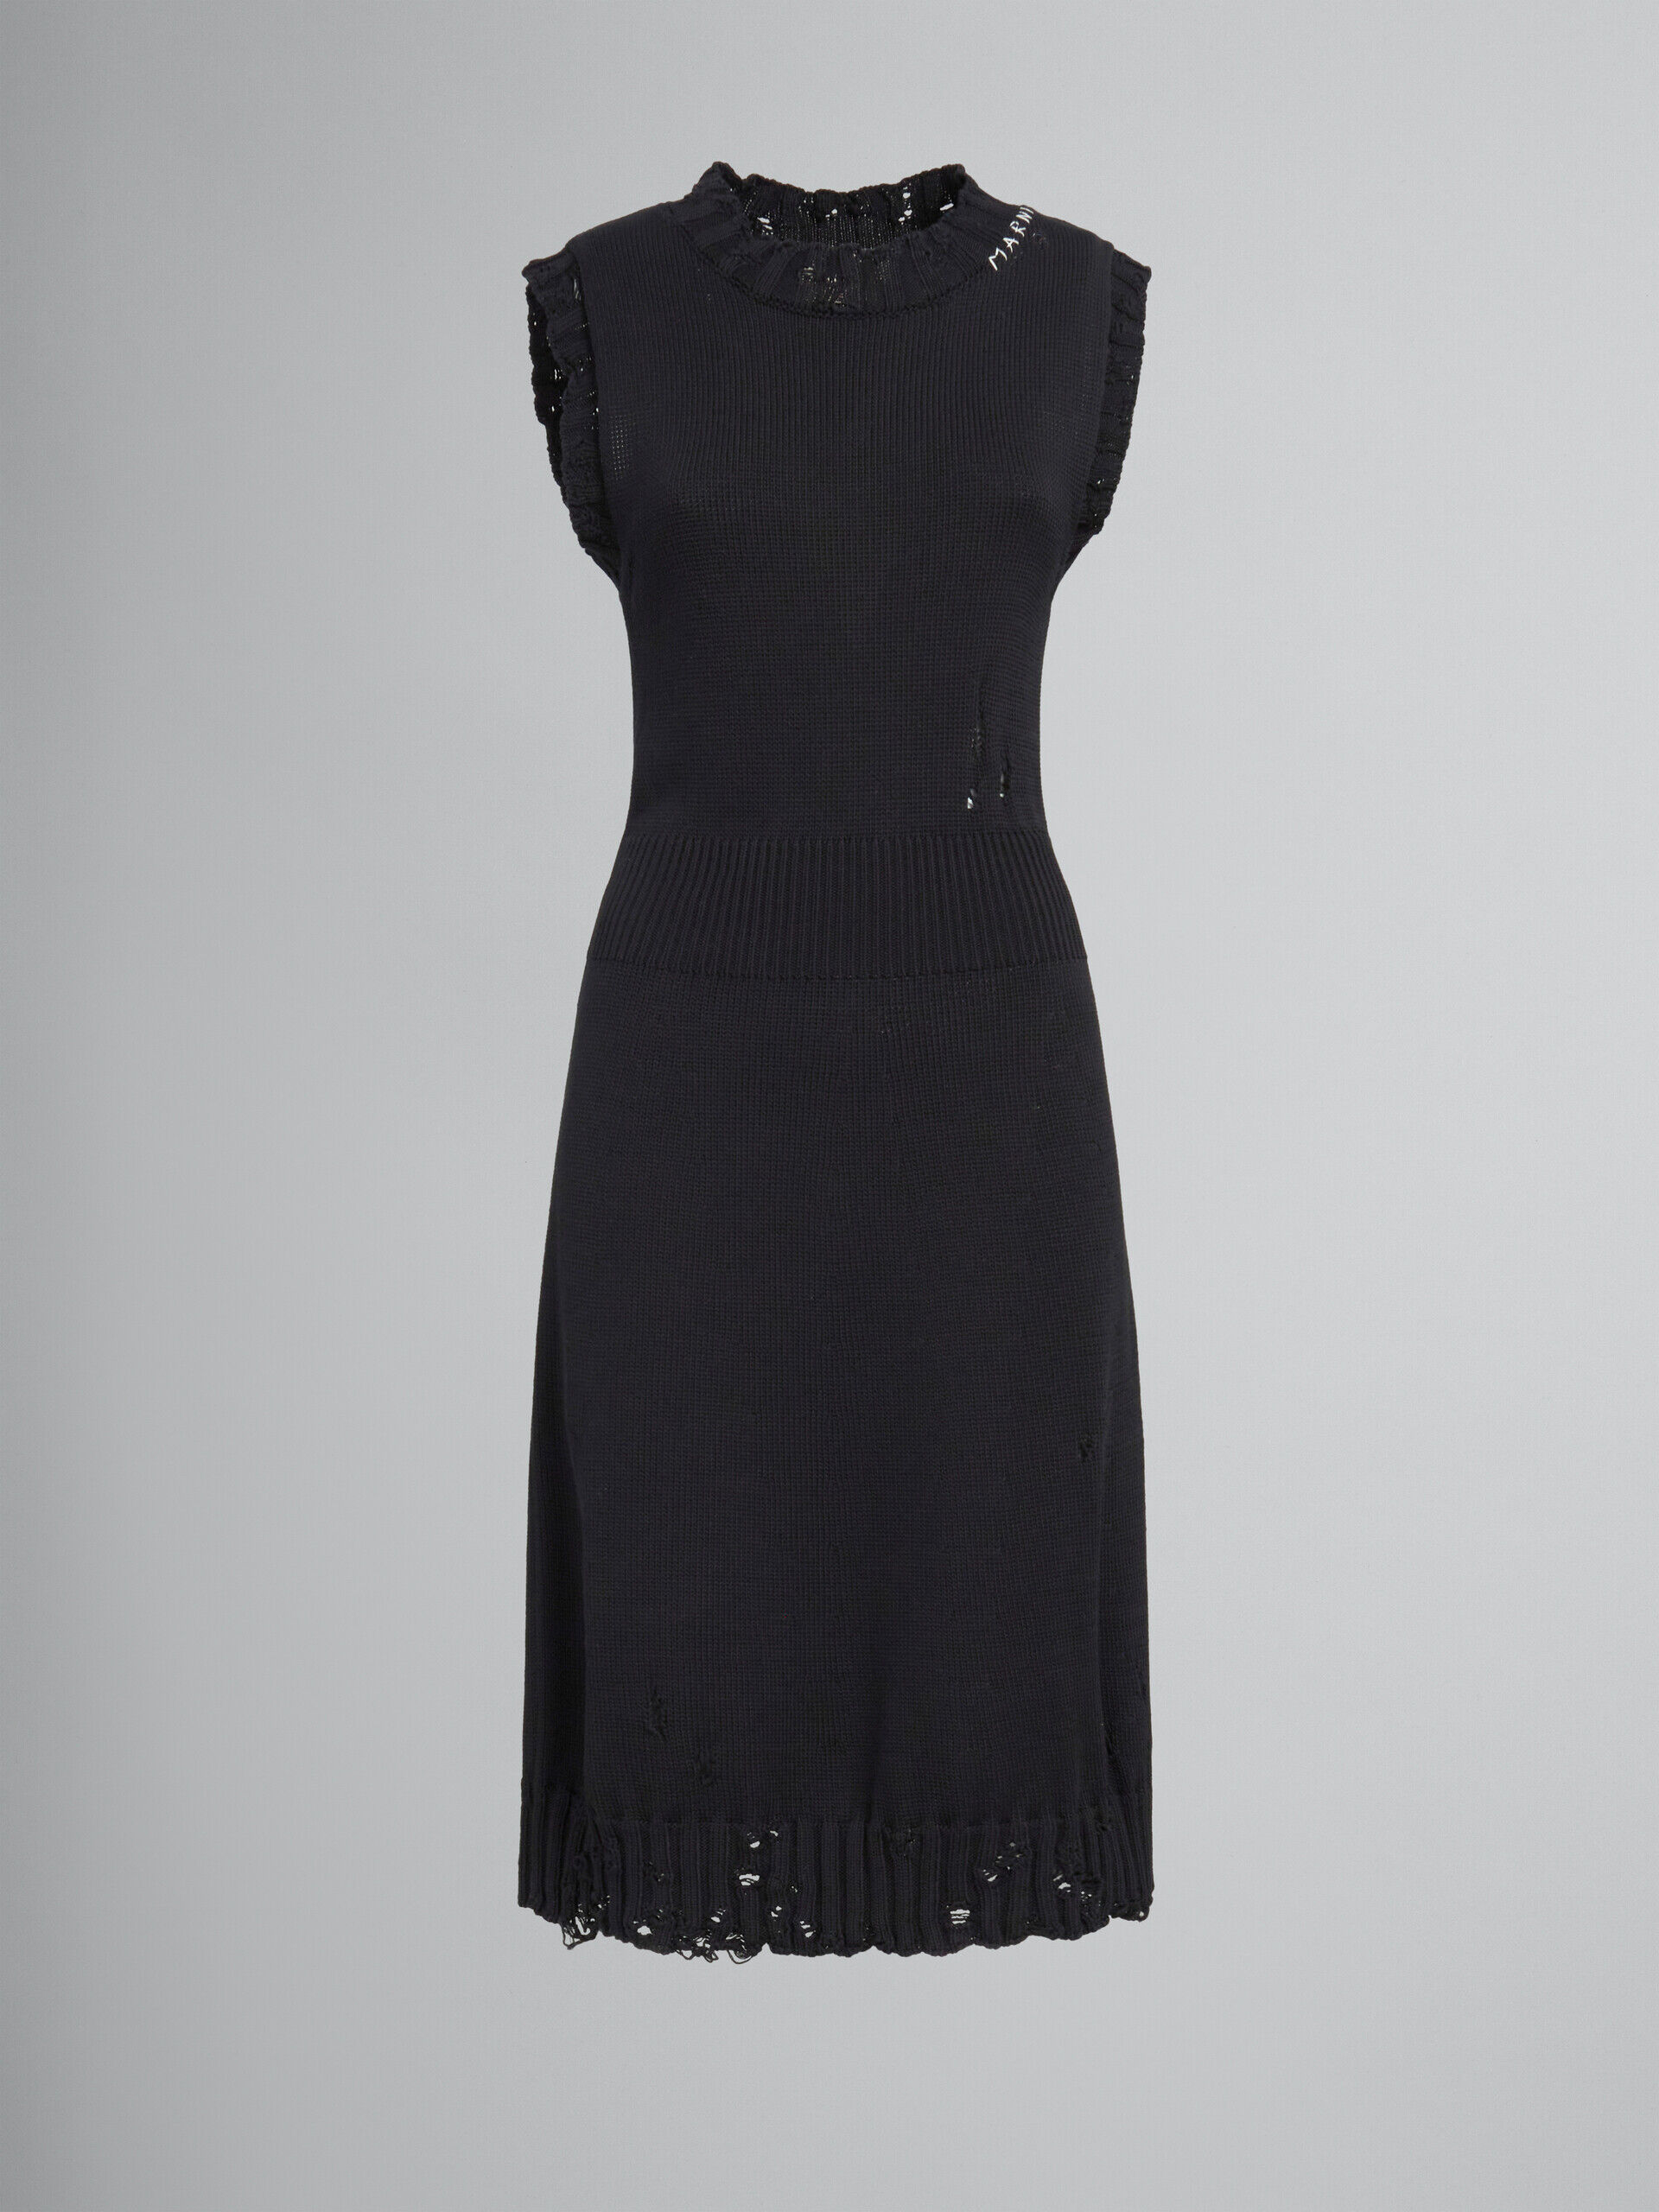 ブラック ディシュベルドコットン製ニットドレス | Marni